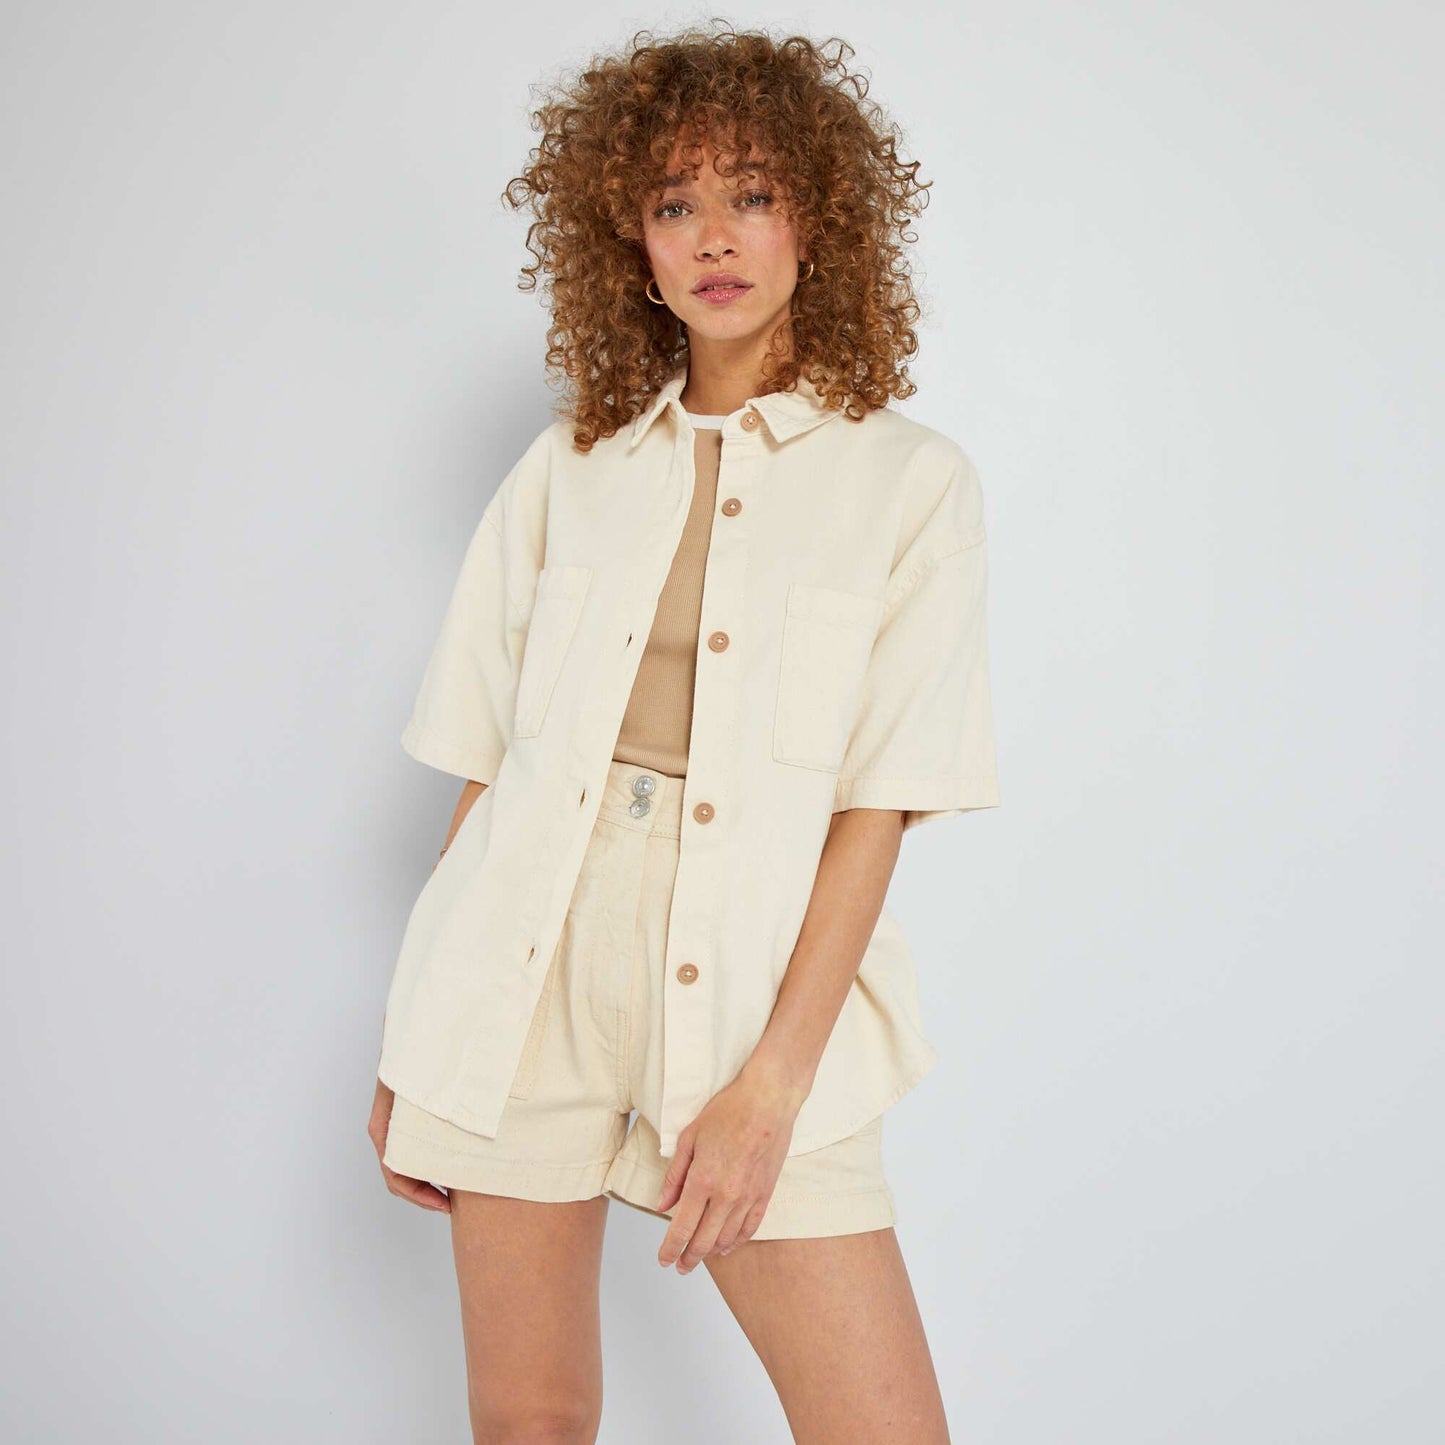 Plain blouse - 2 pockets BEIGE